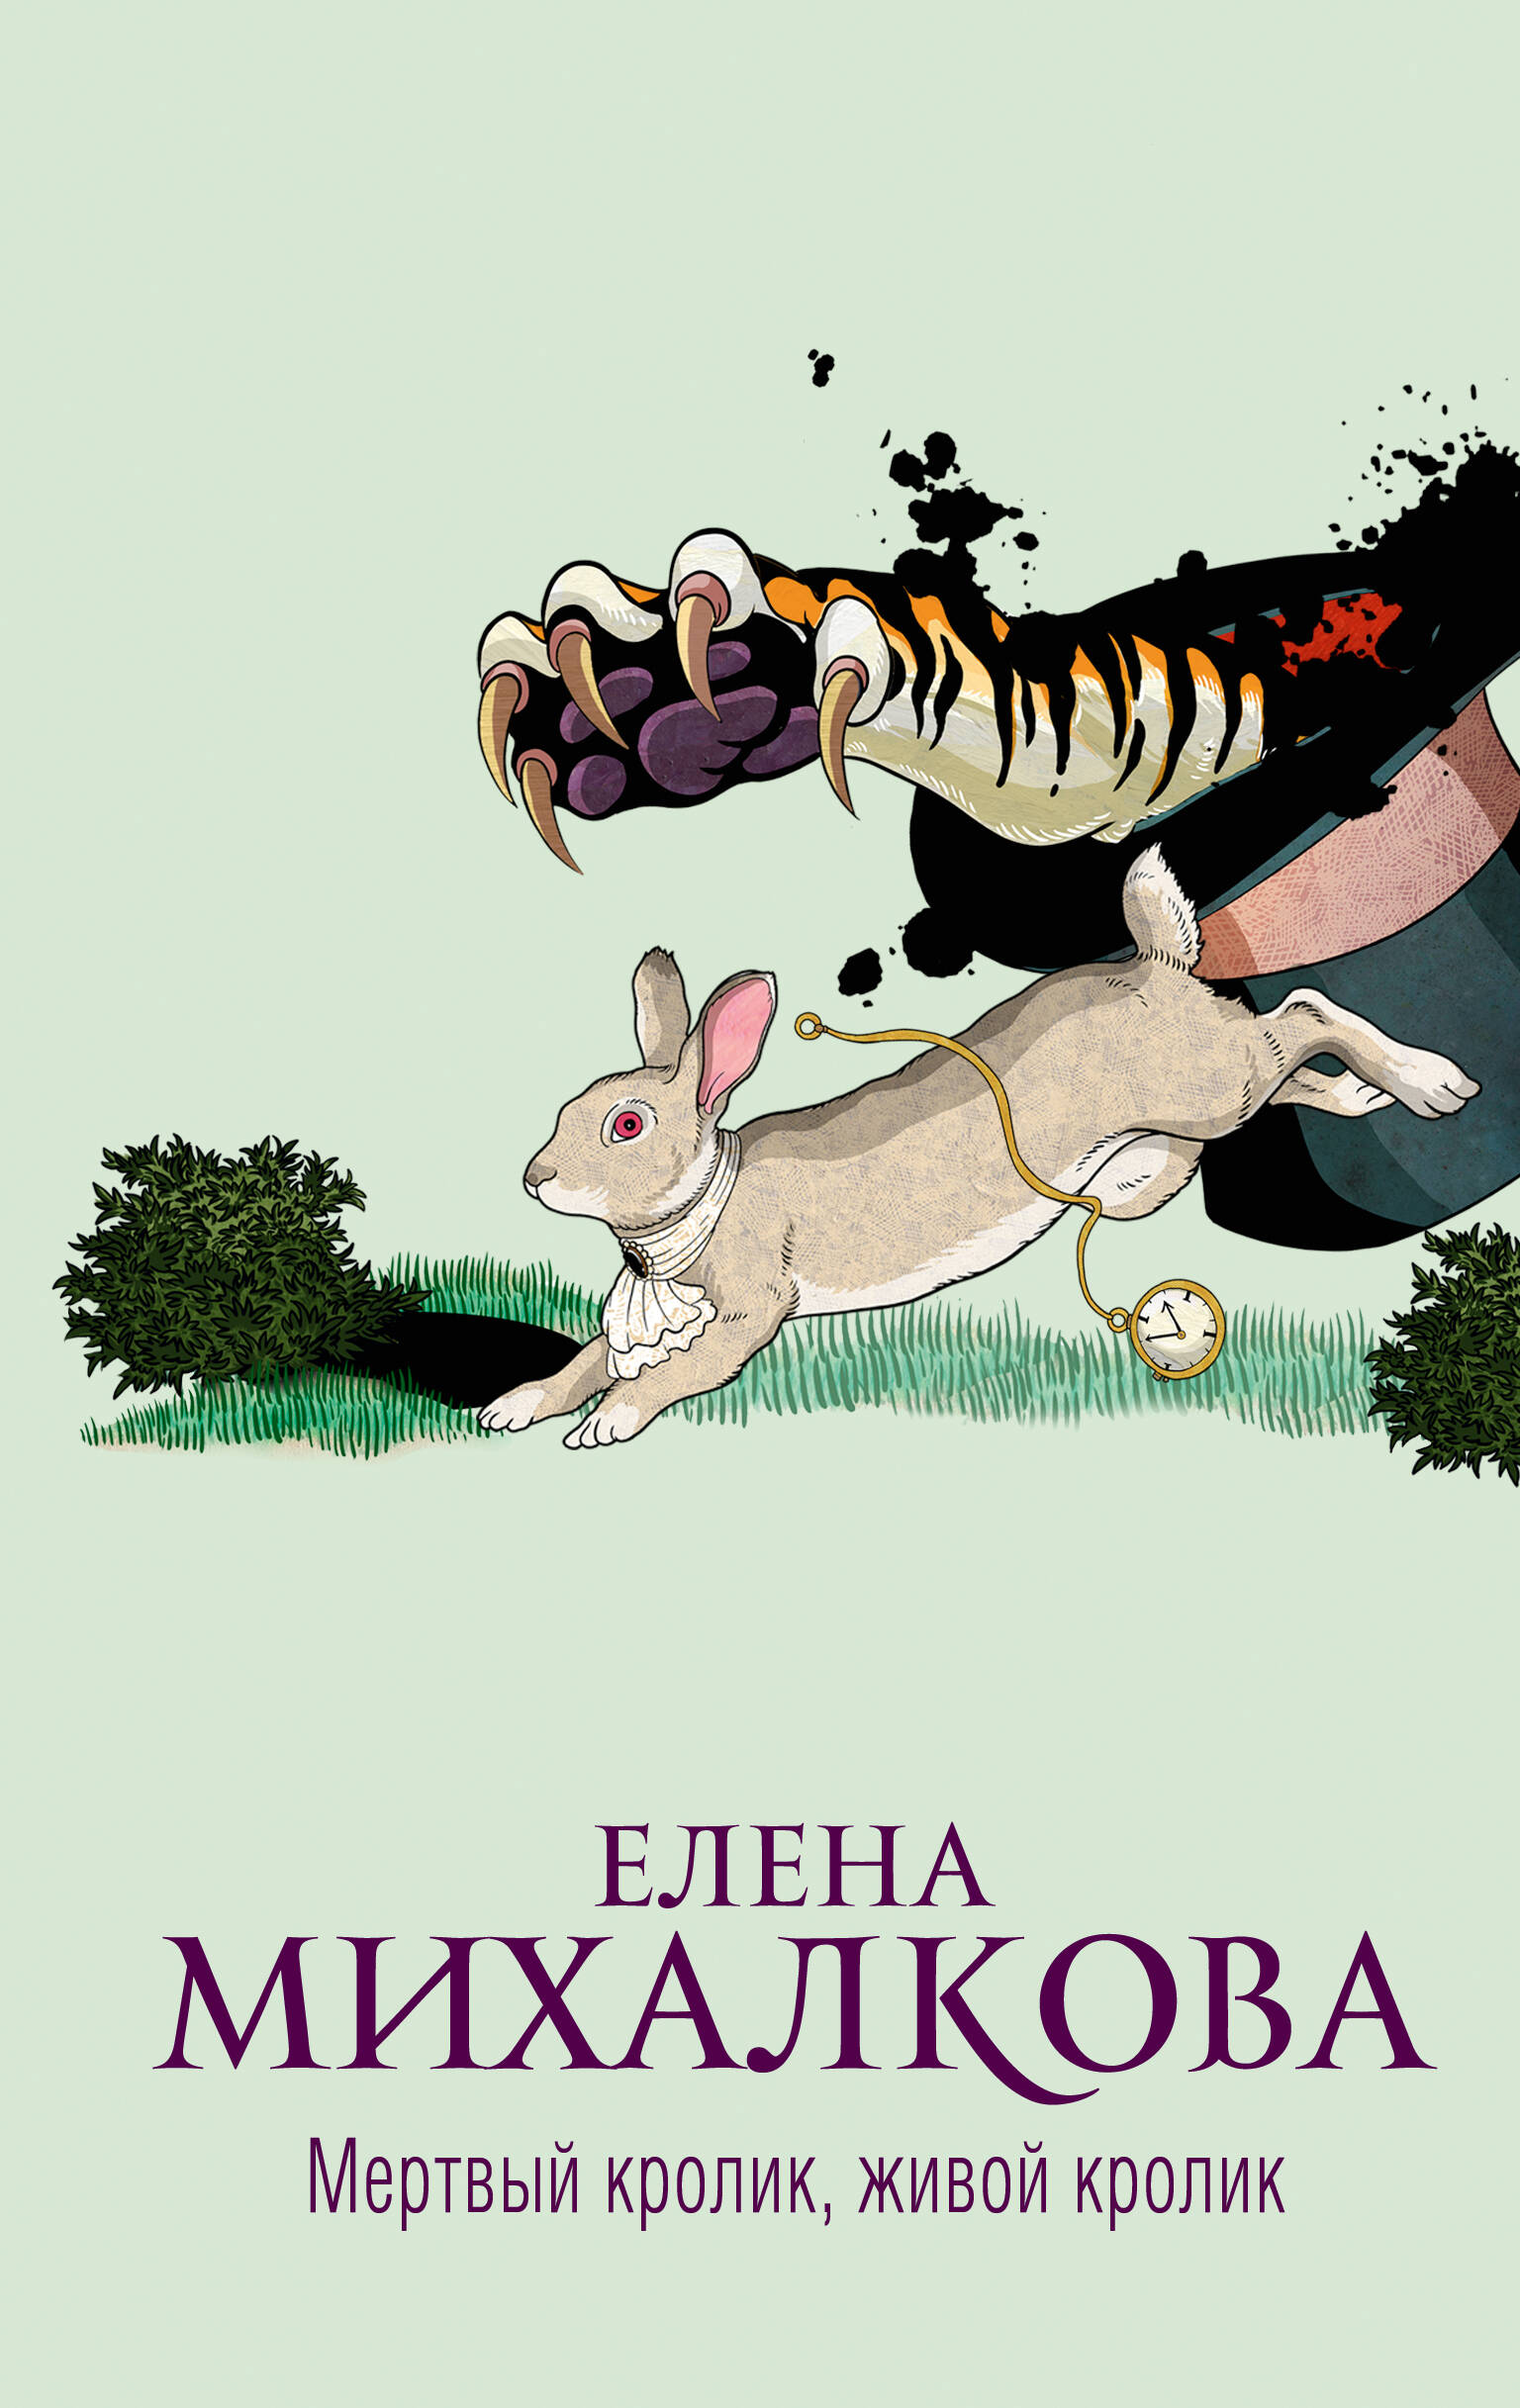 Михалкова Елена Ивановна Мертвый кролик, живой кролик: роман михалкова елена ивановна знак истинного пути роман